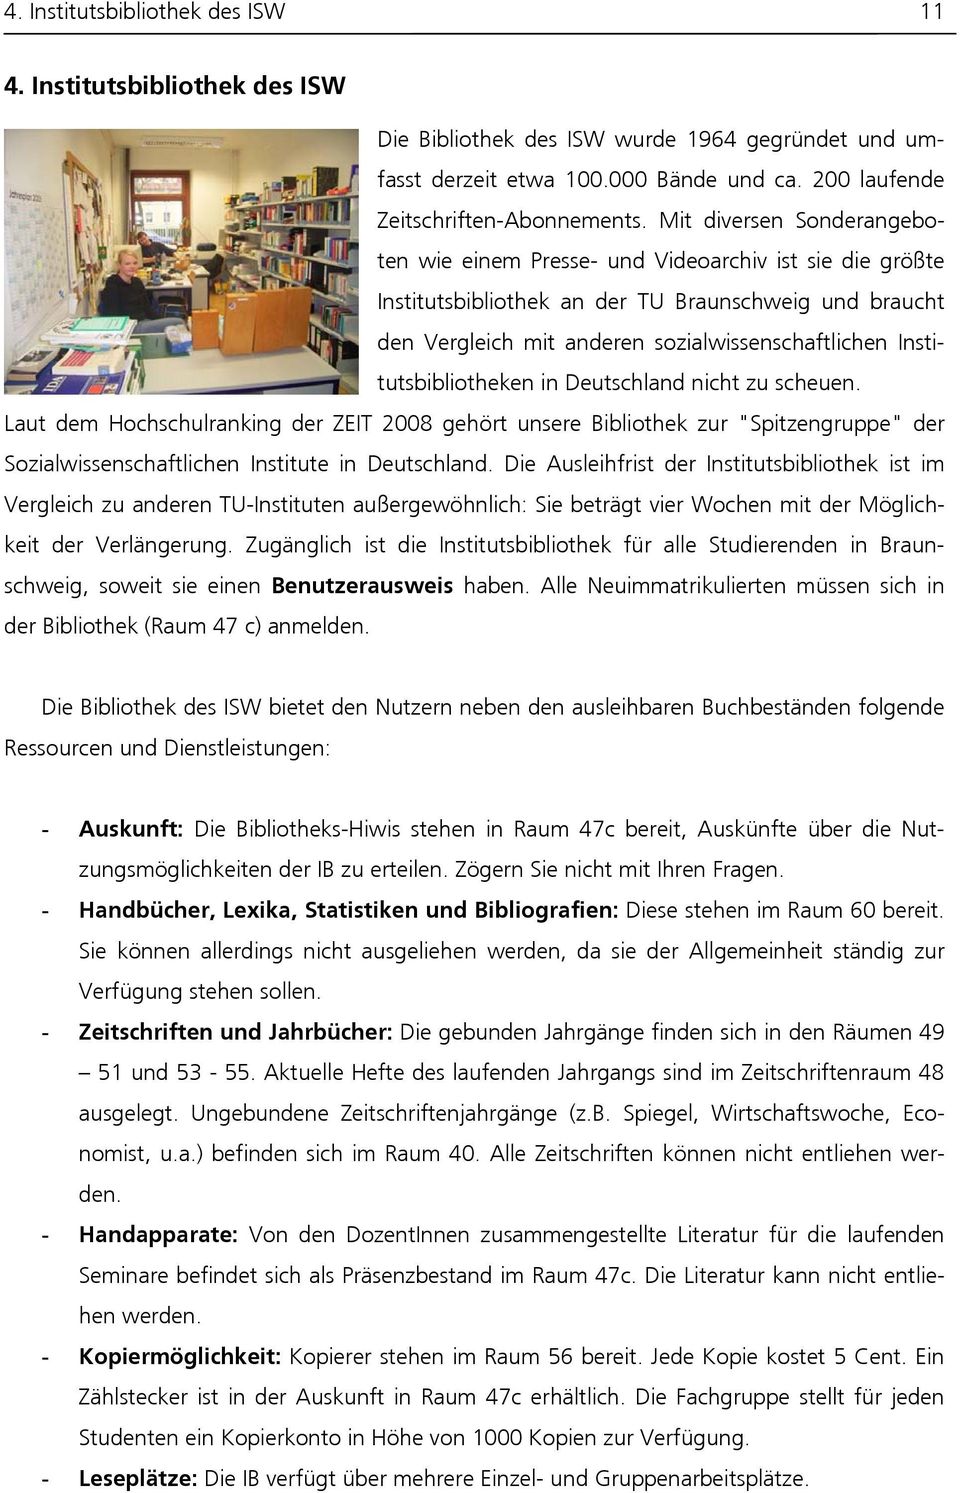 Institutsbibliotheken in Deutschland nicht zu scheuen. Laut dem Hochschulranking der ZEIT 2008 gehört unsere Bibliothek zur "Spitzengruppe" der Sozialwissenschaftlichen Institute in Deutschland.